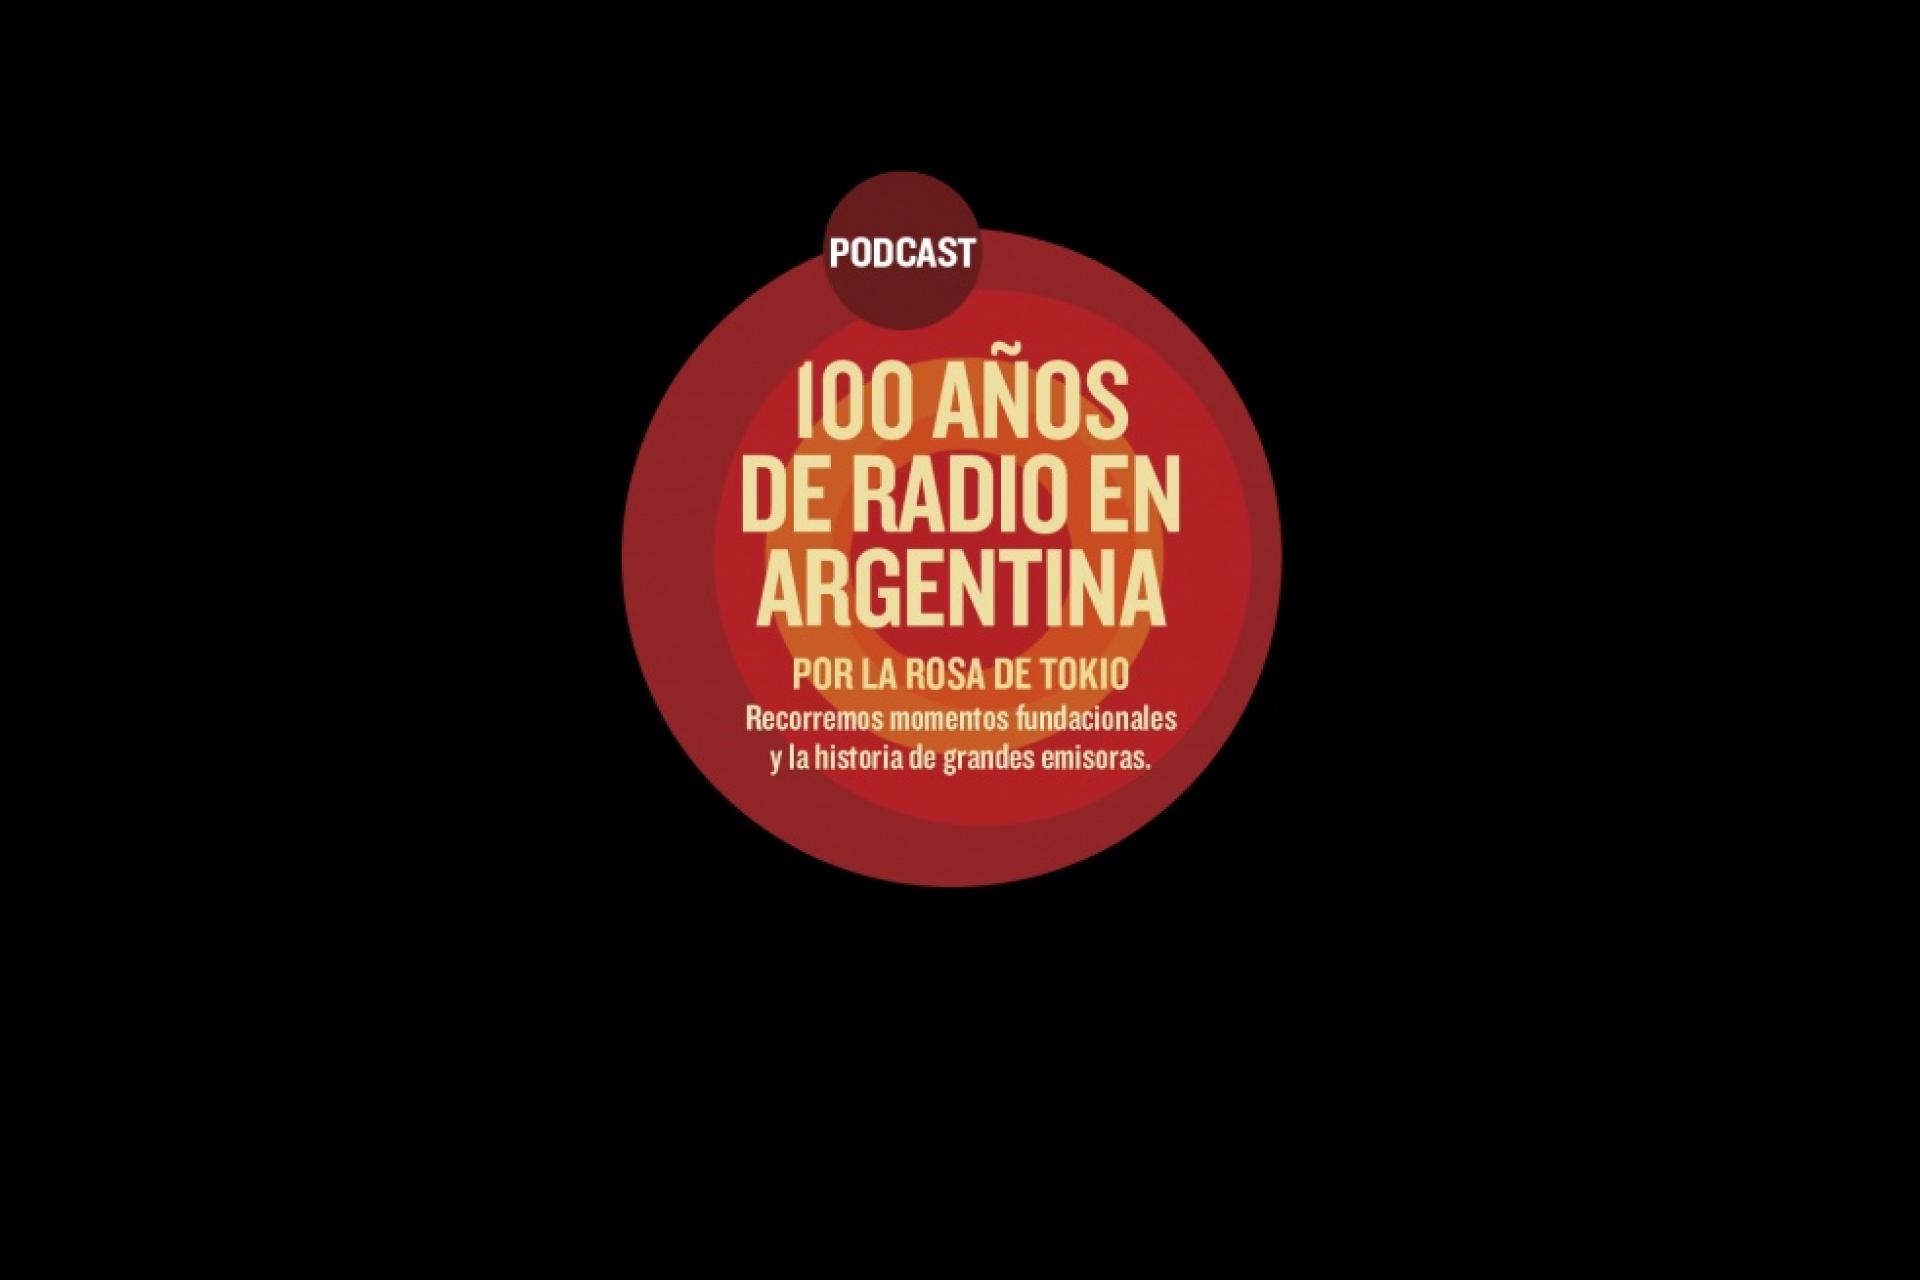 100 AÑOS DE RADIO EN ARGENTINA